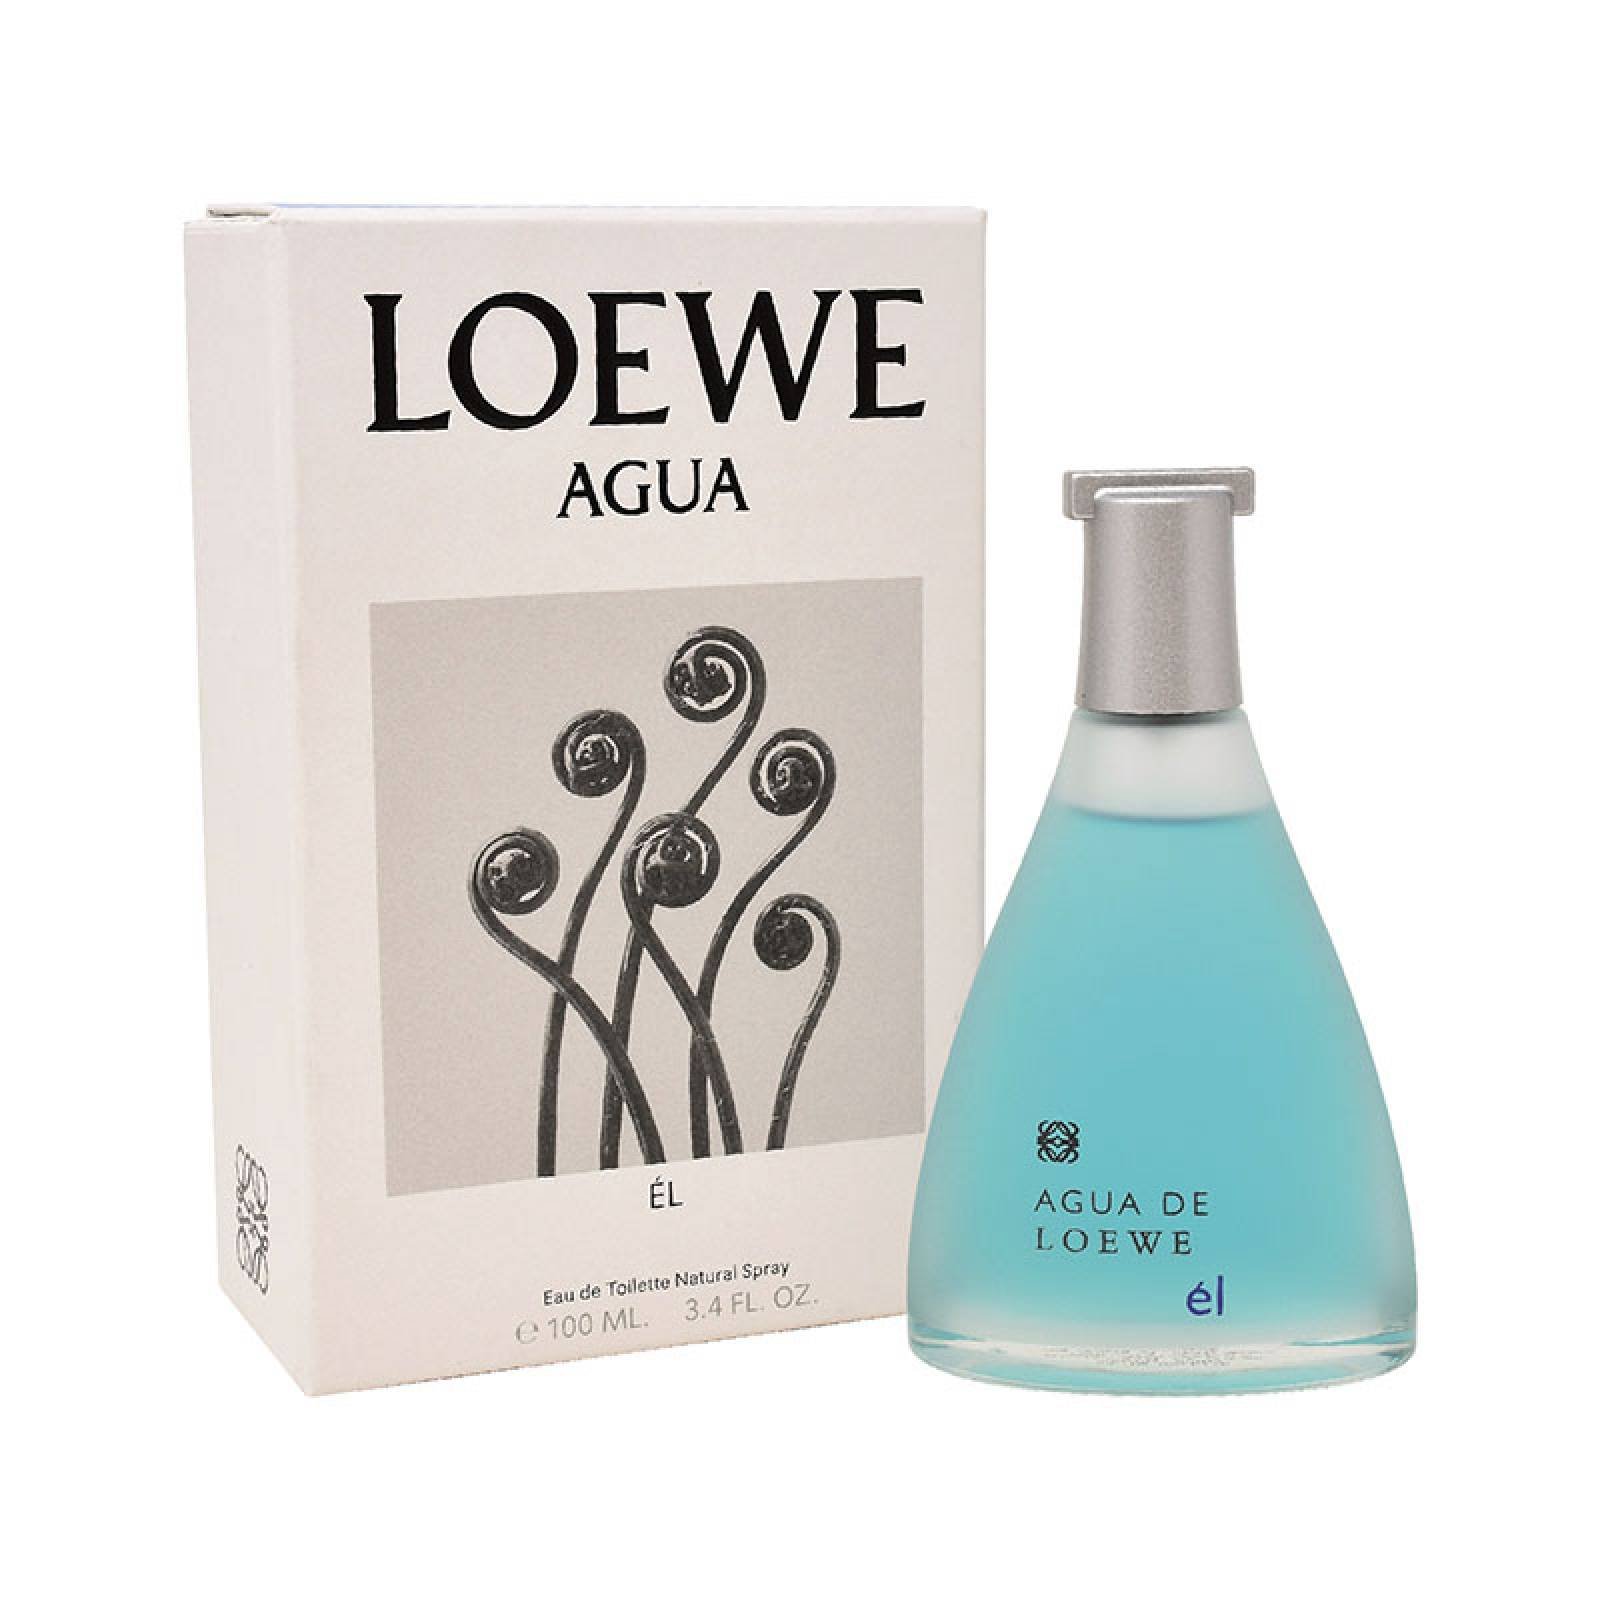 Agua De Loewe El 100 ml Edt Spray de Loewe